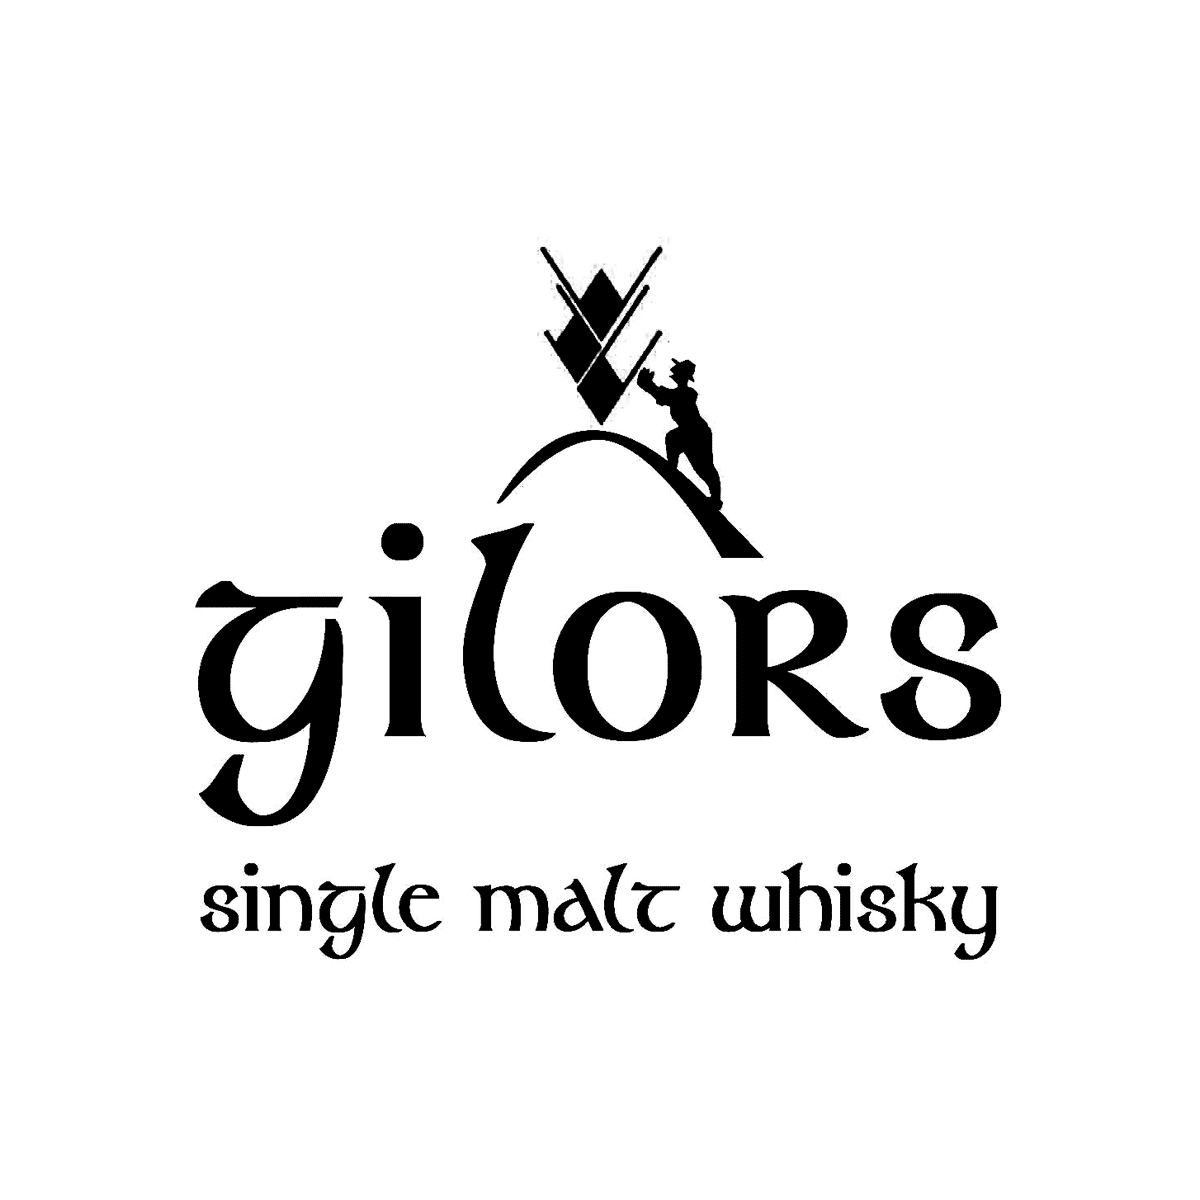 Gilors Whisky Logo